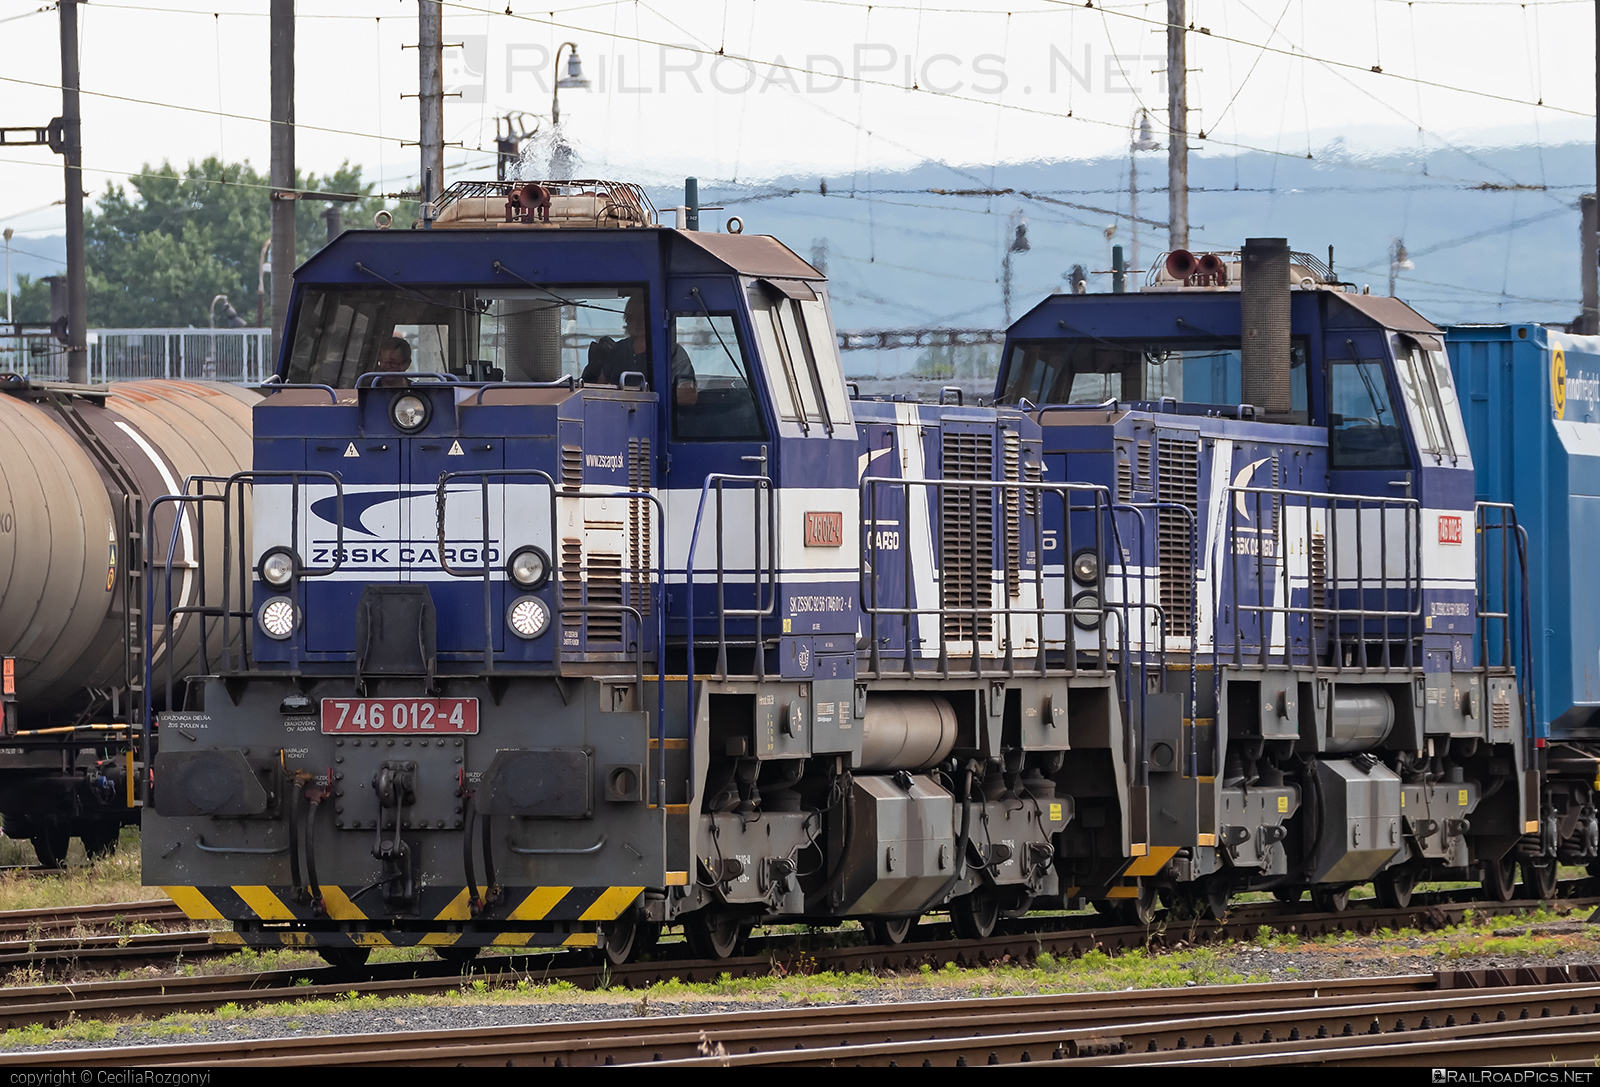 ŽOS Zvolen Class 746 - 746 012-4 operated by Železničná Spoločnost' Cargo Slovakia a.s. #ZeleznicnaSpolocnostCargoSlovakia #locomotive746 #zoszvolen #zoszvolen746 #zsskcClass746 #zsskcargo